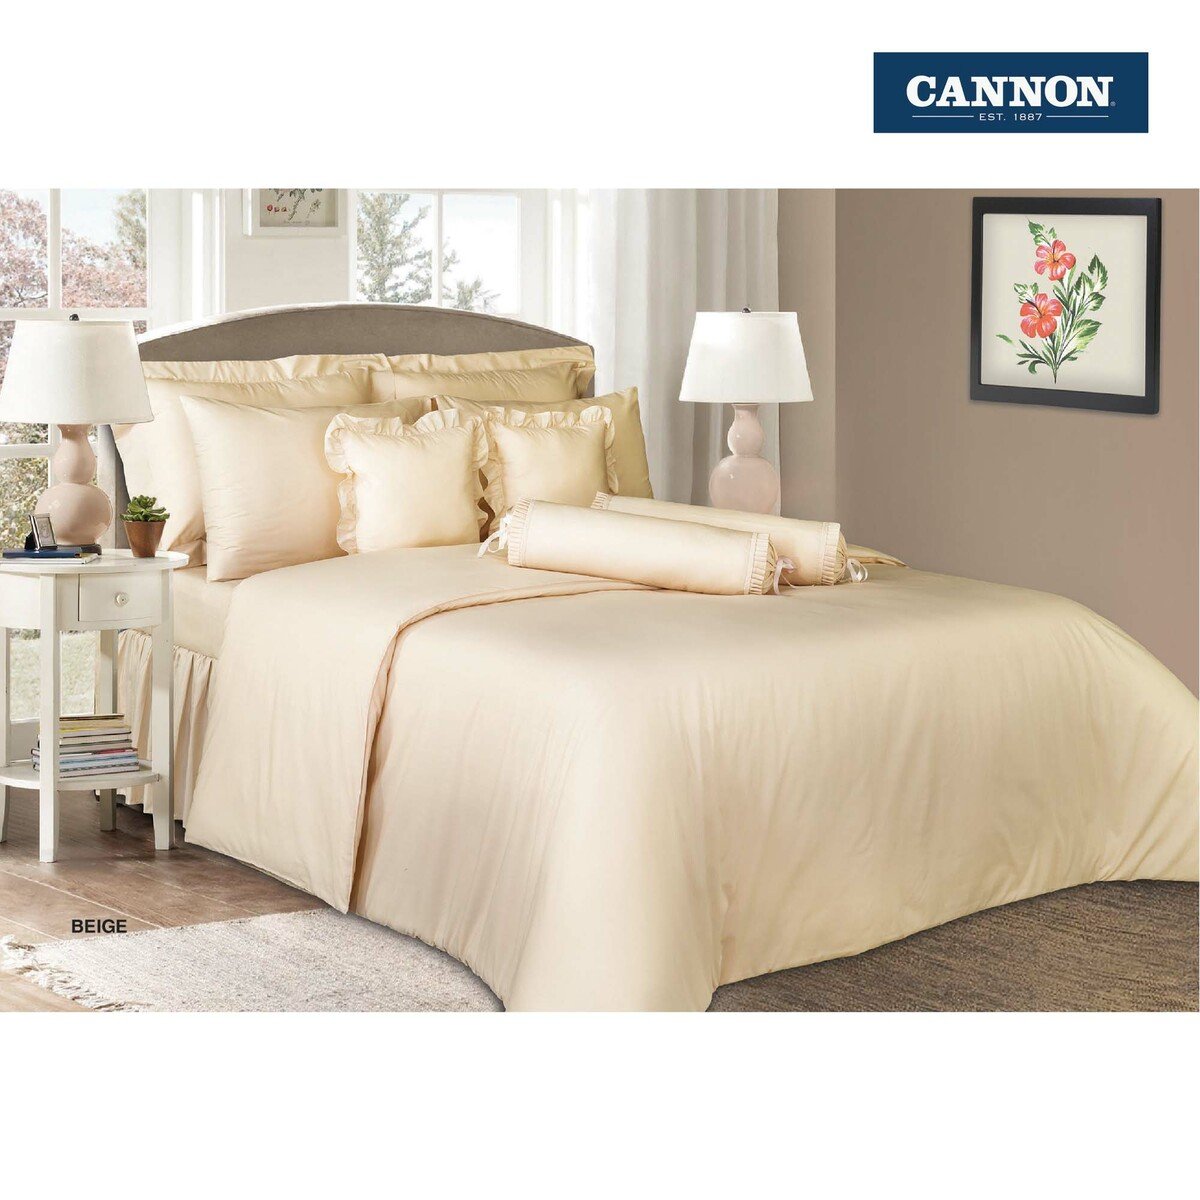 Cannon Comforter Plain Single 168x218cm Beige